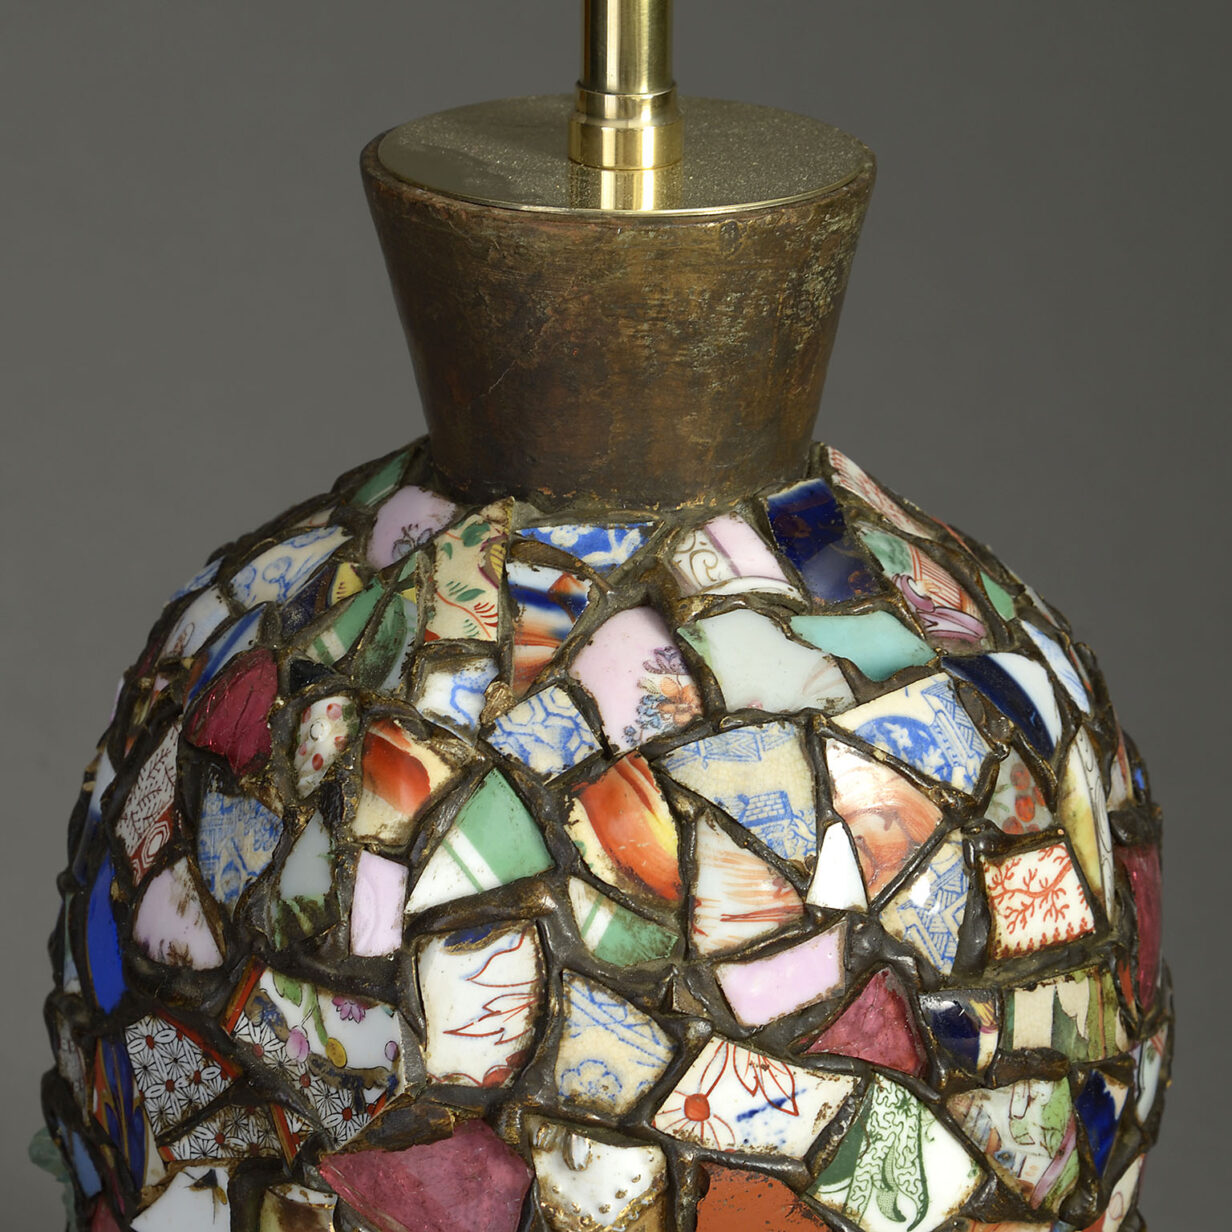 An unusual ceramic collage lamp